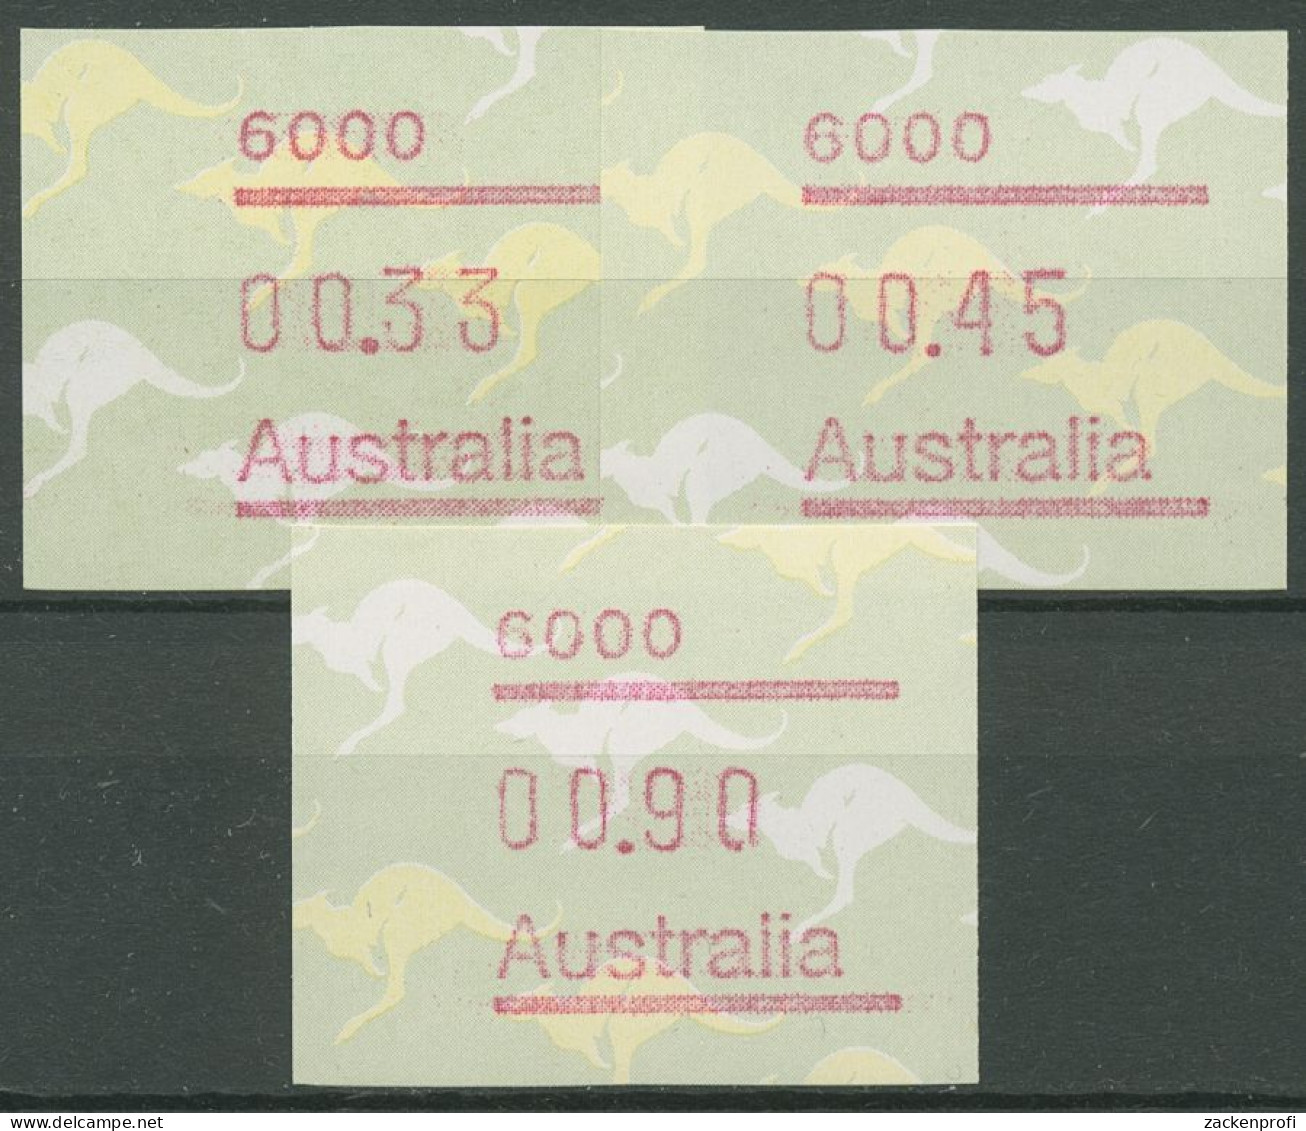 Australien 1985 Känguruh Tastensatz Automatenmarke 4 S1, 6000 Postfrisch - Timbres De Distributeurs [ATM]